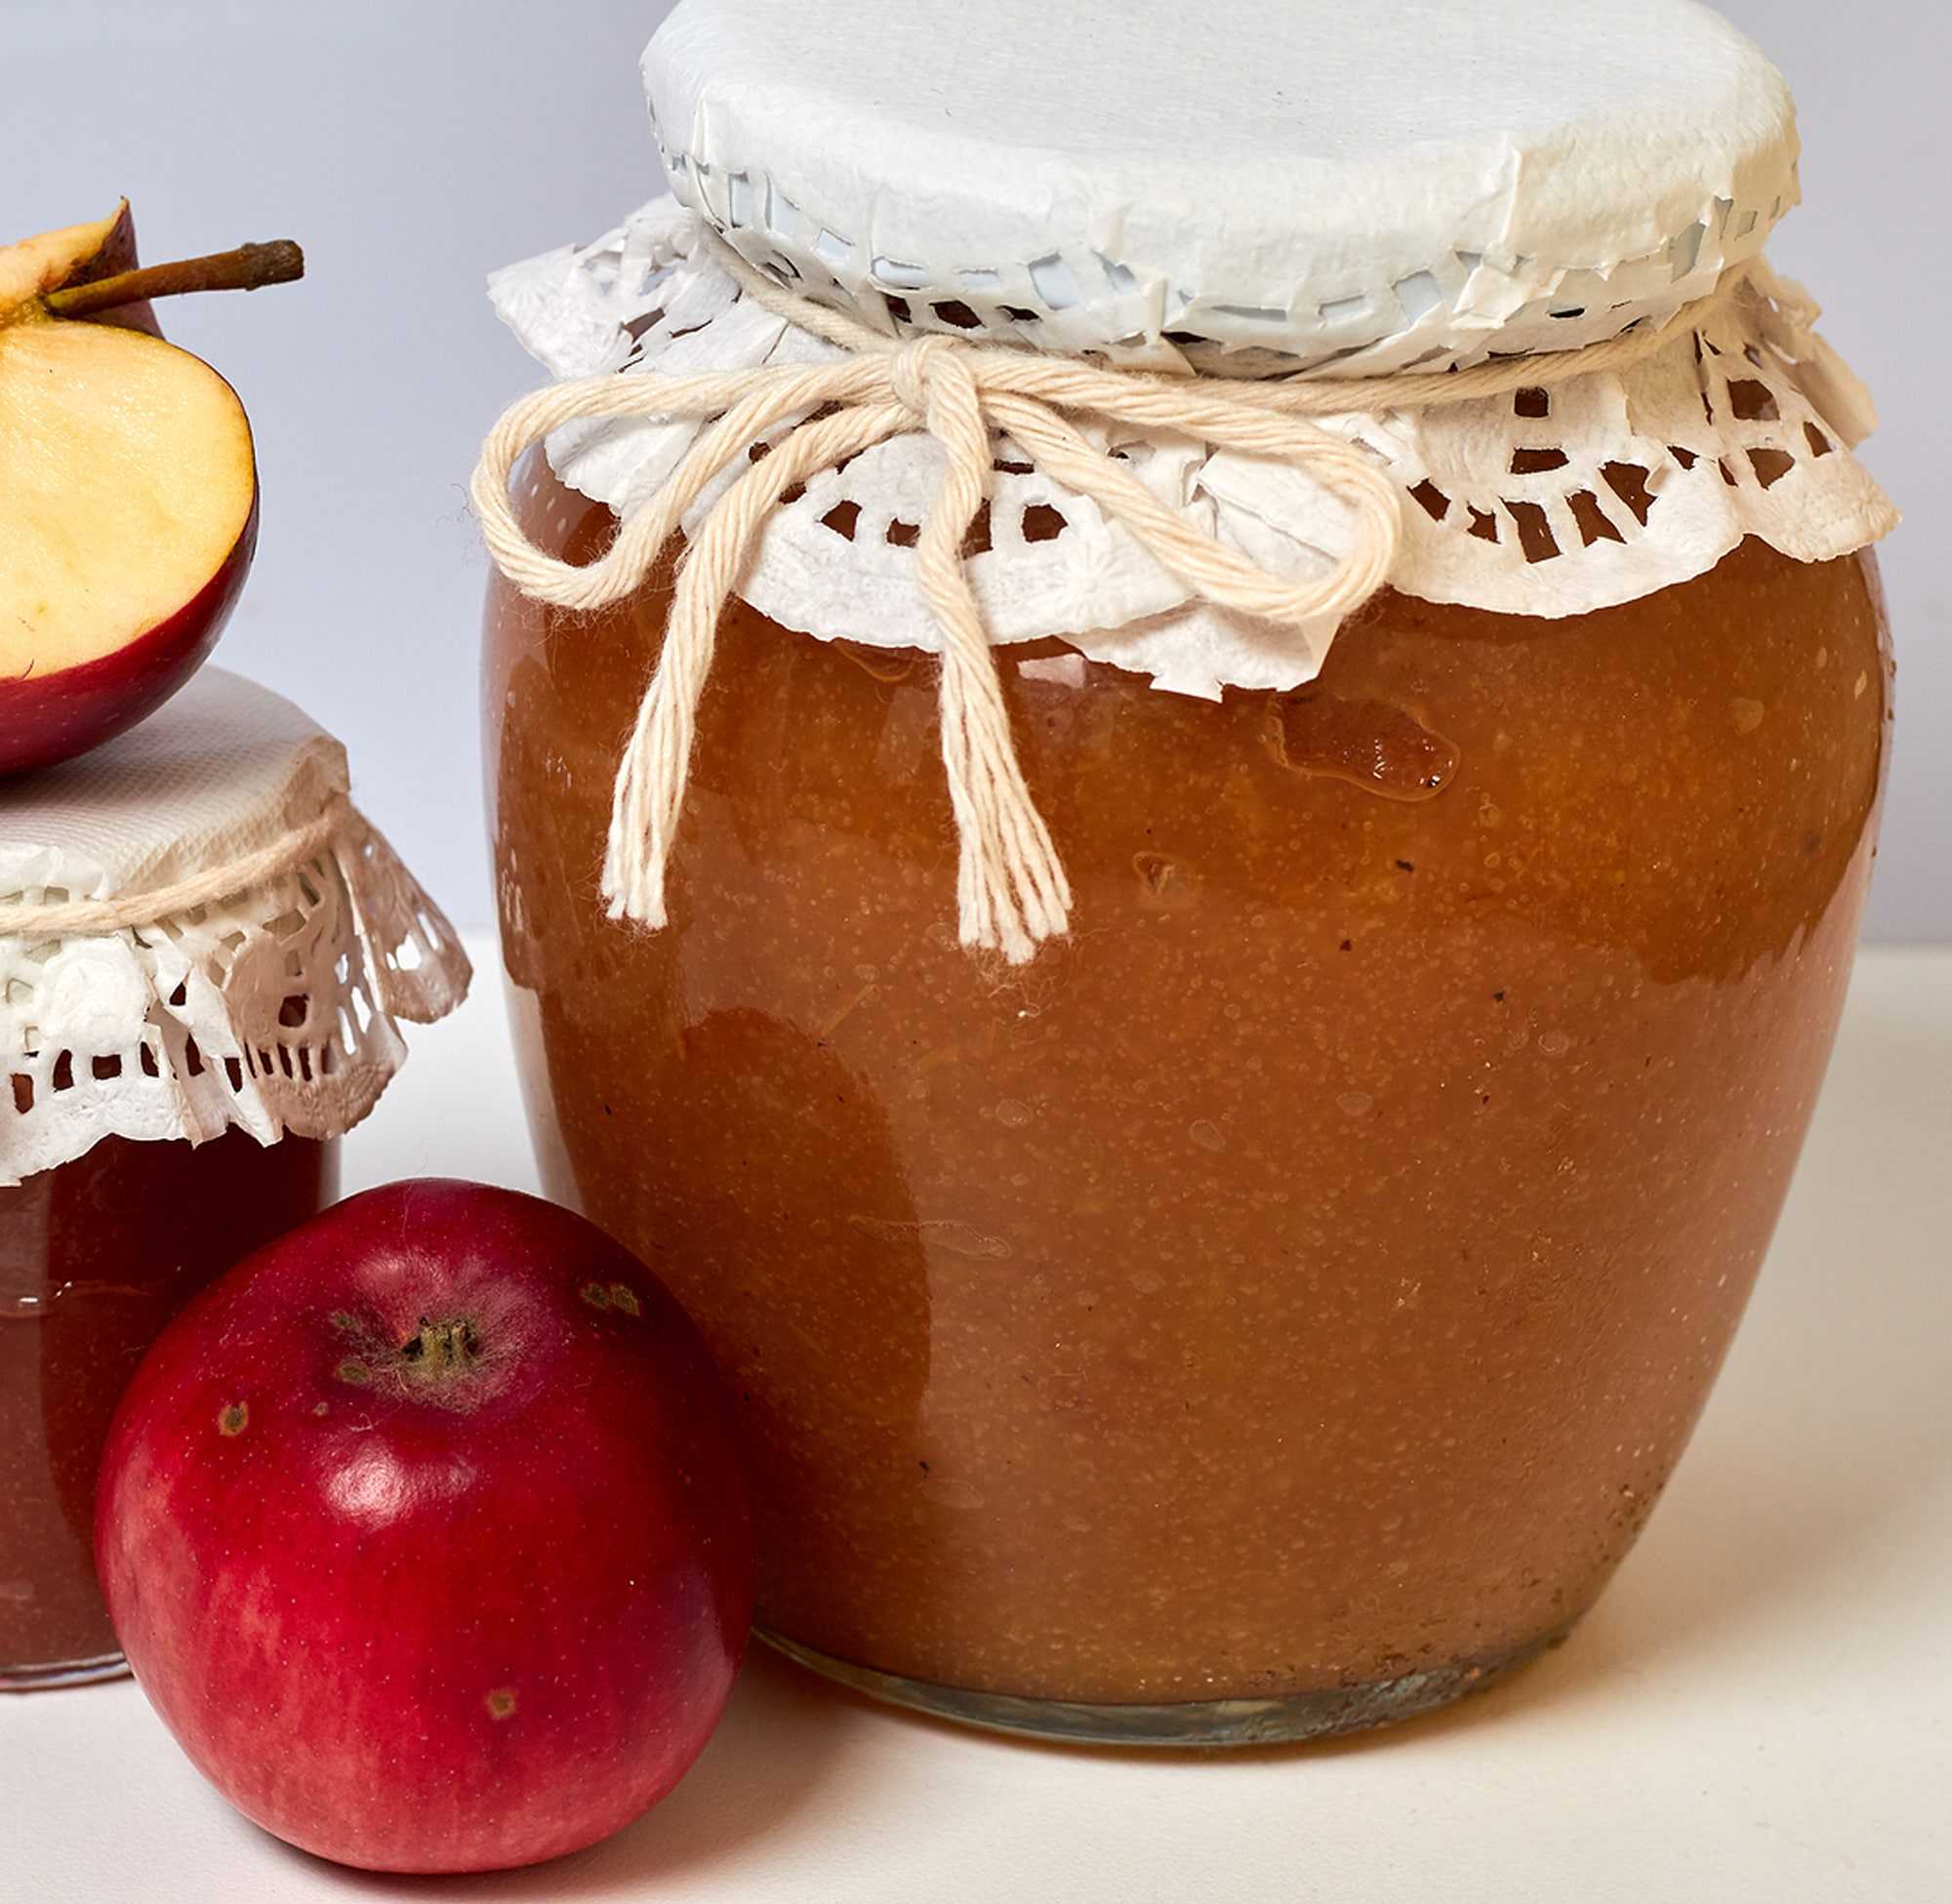 Домашнее повидло из яблок на зиму – нужная заготовка! рецепты разного повидла из яблок в домашних условиях